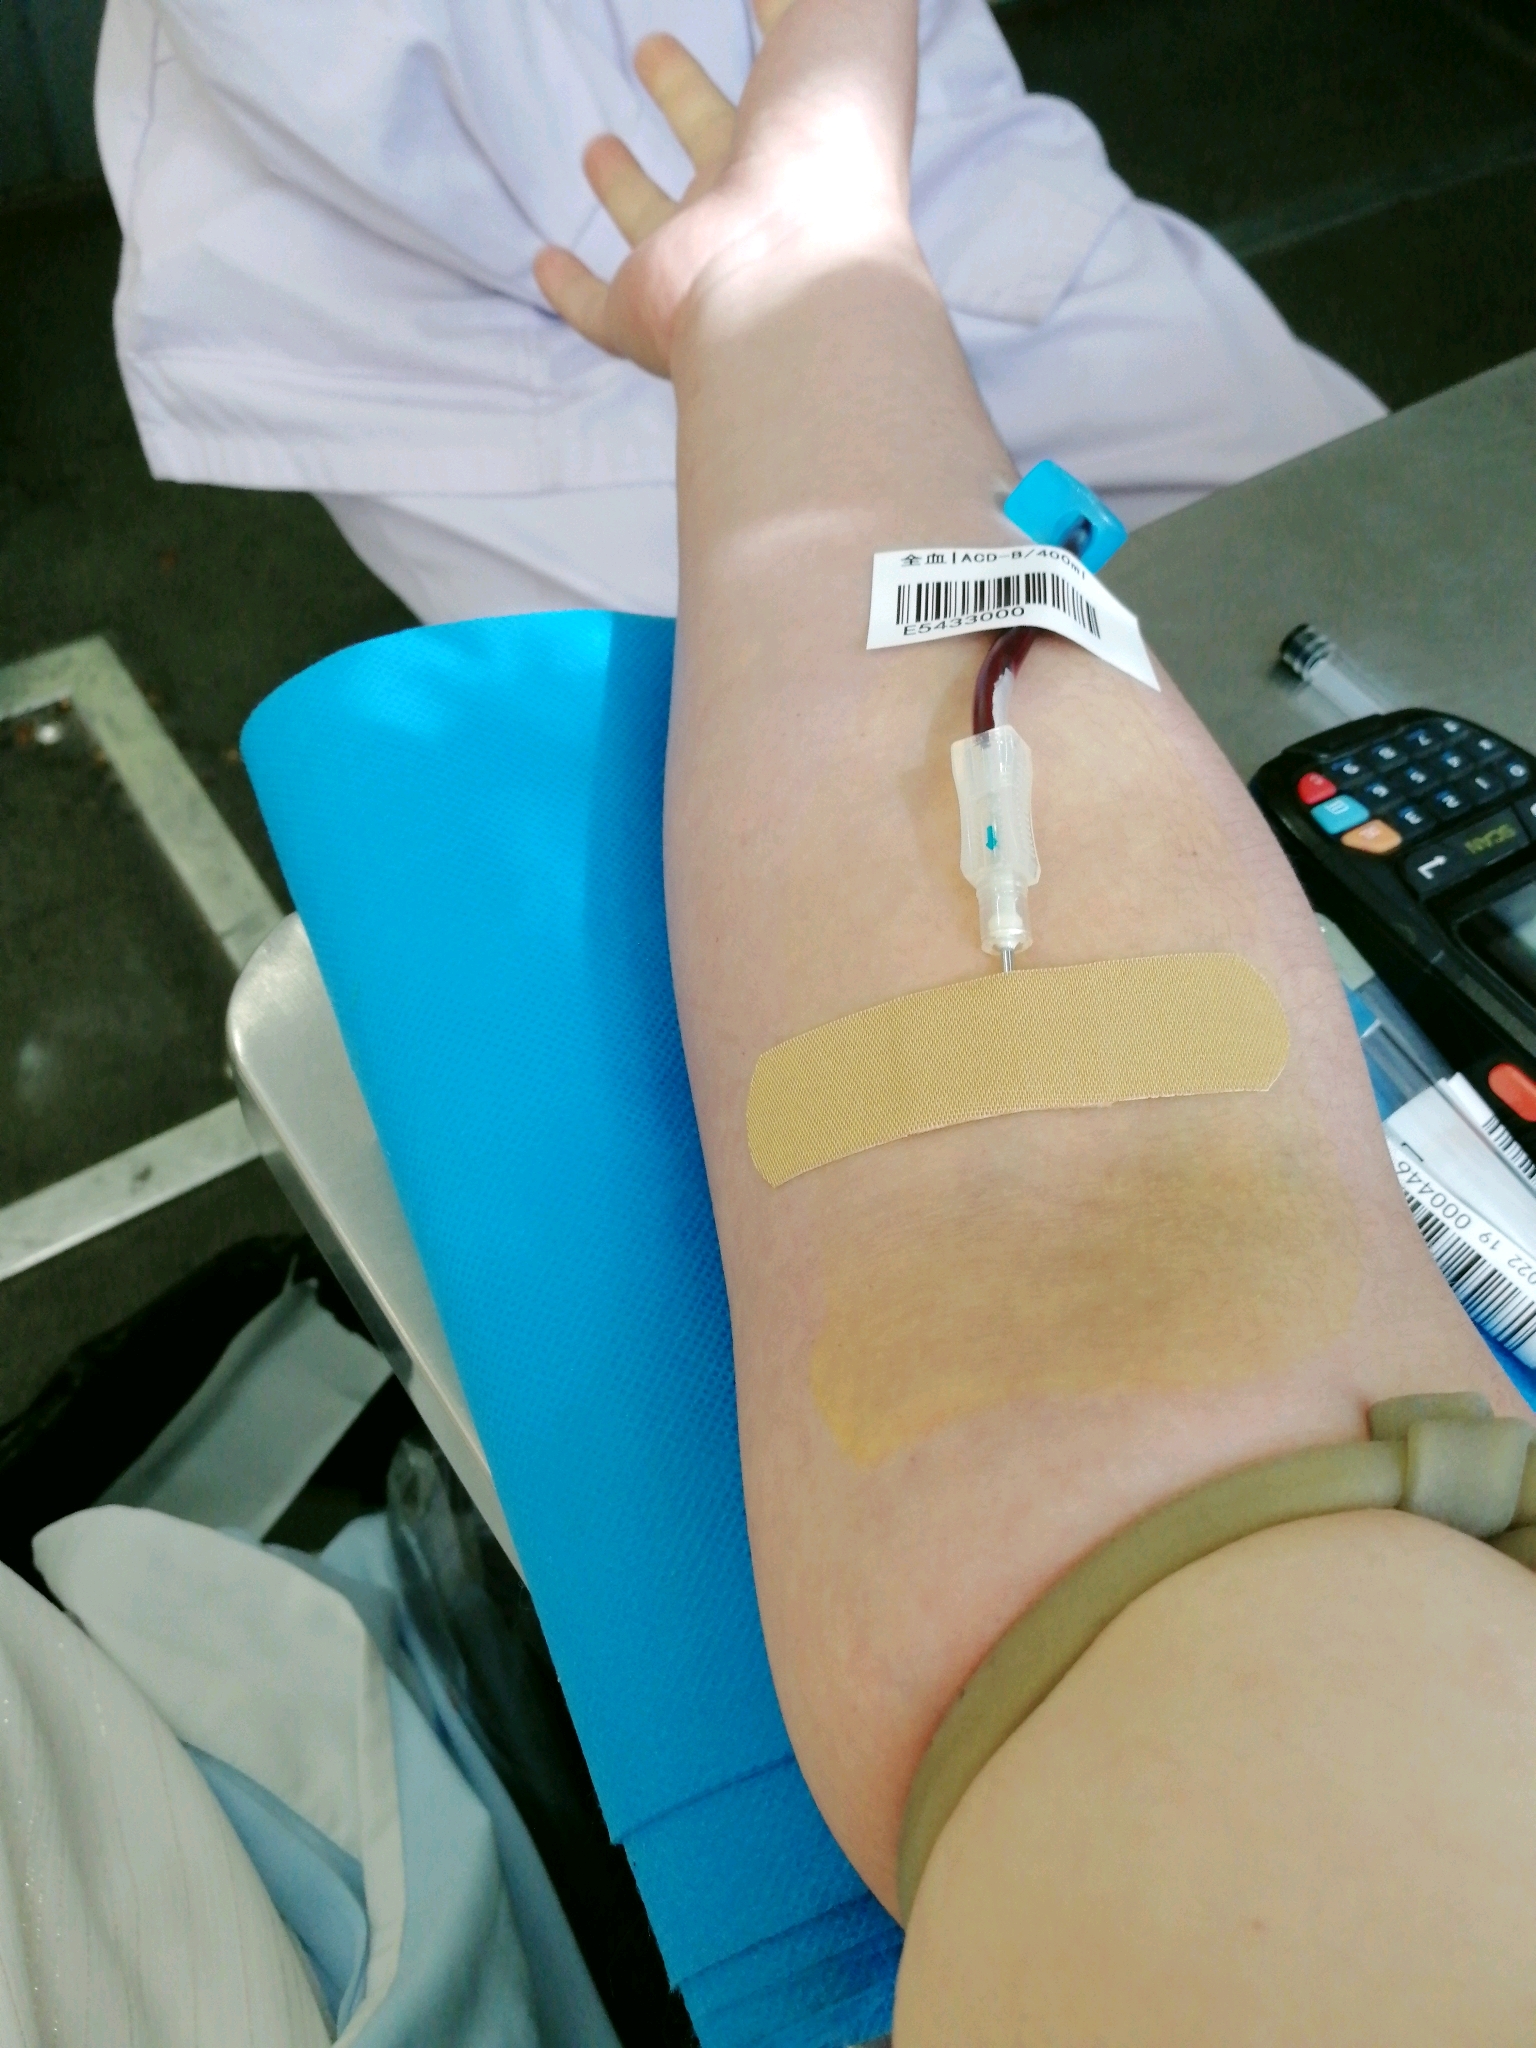 第一次献血的经历